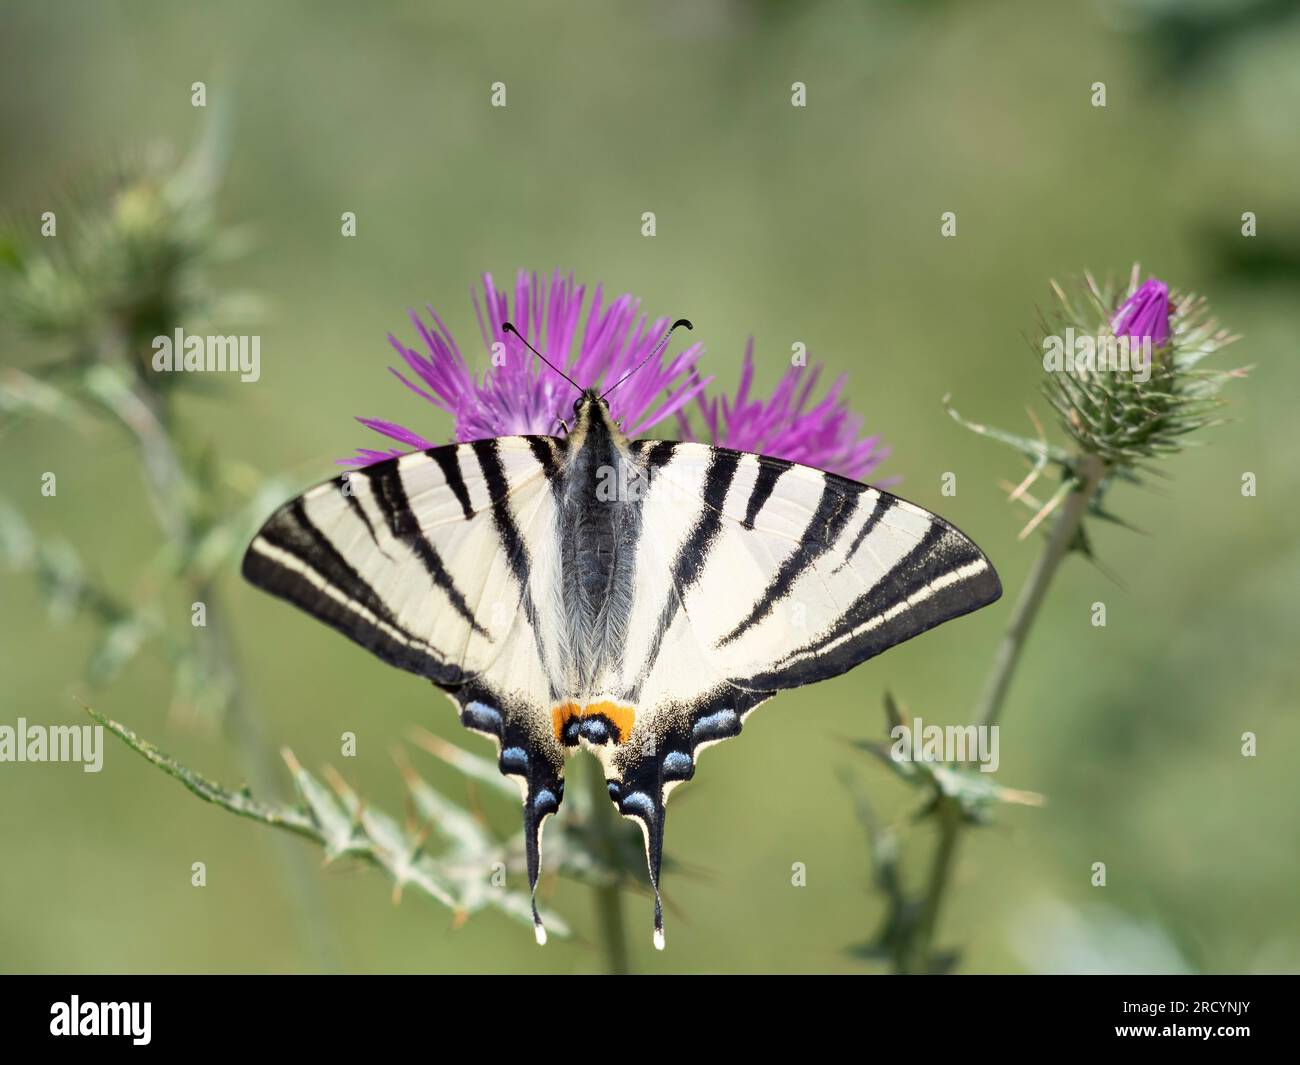 Schwalbenschwanz-Schmetterling (Iphiclides podalirius) auf Milchdistel (Carduus marianus), in der Nähe von Phaestos, Kreta, Griechenland Stockfoto